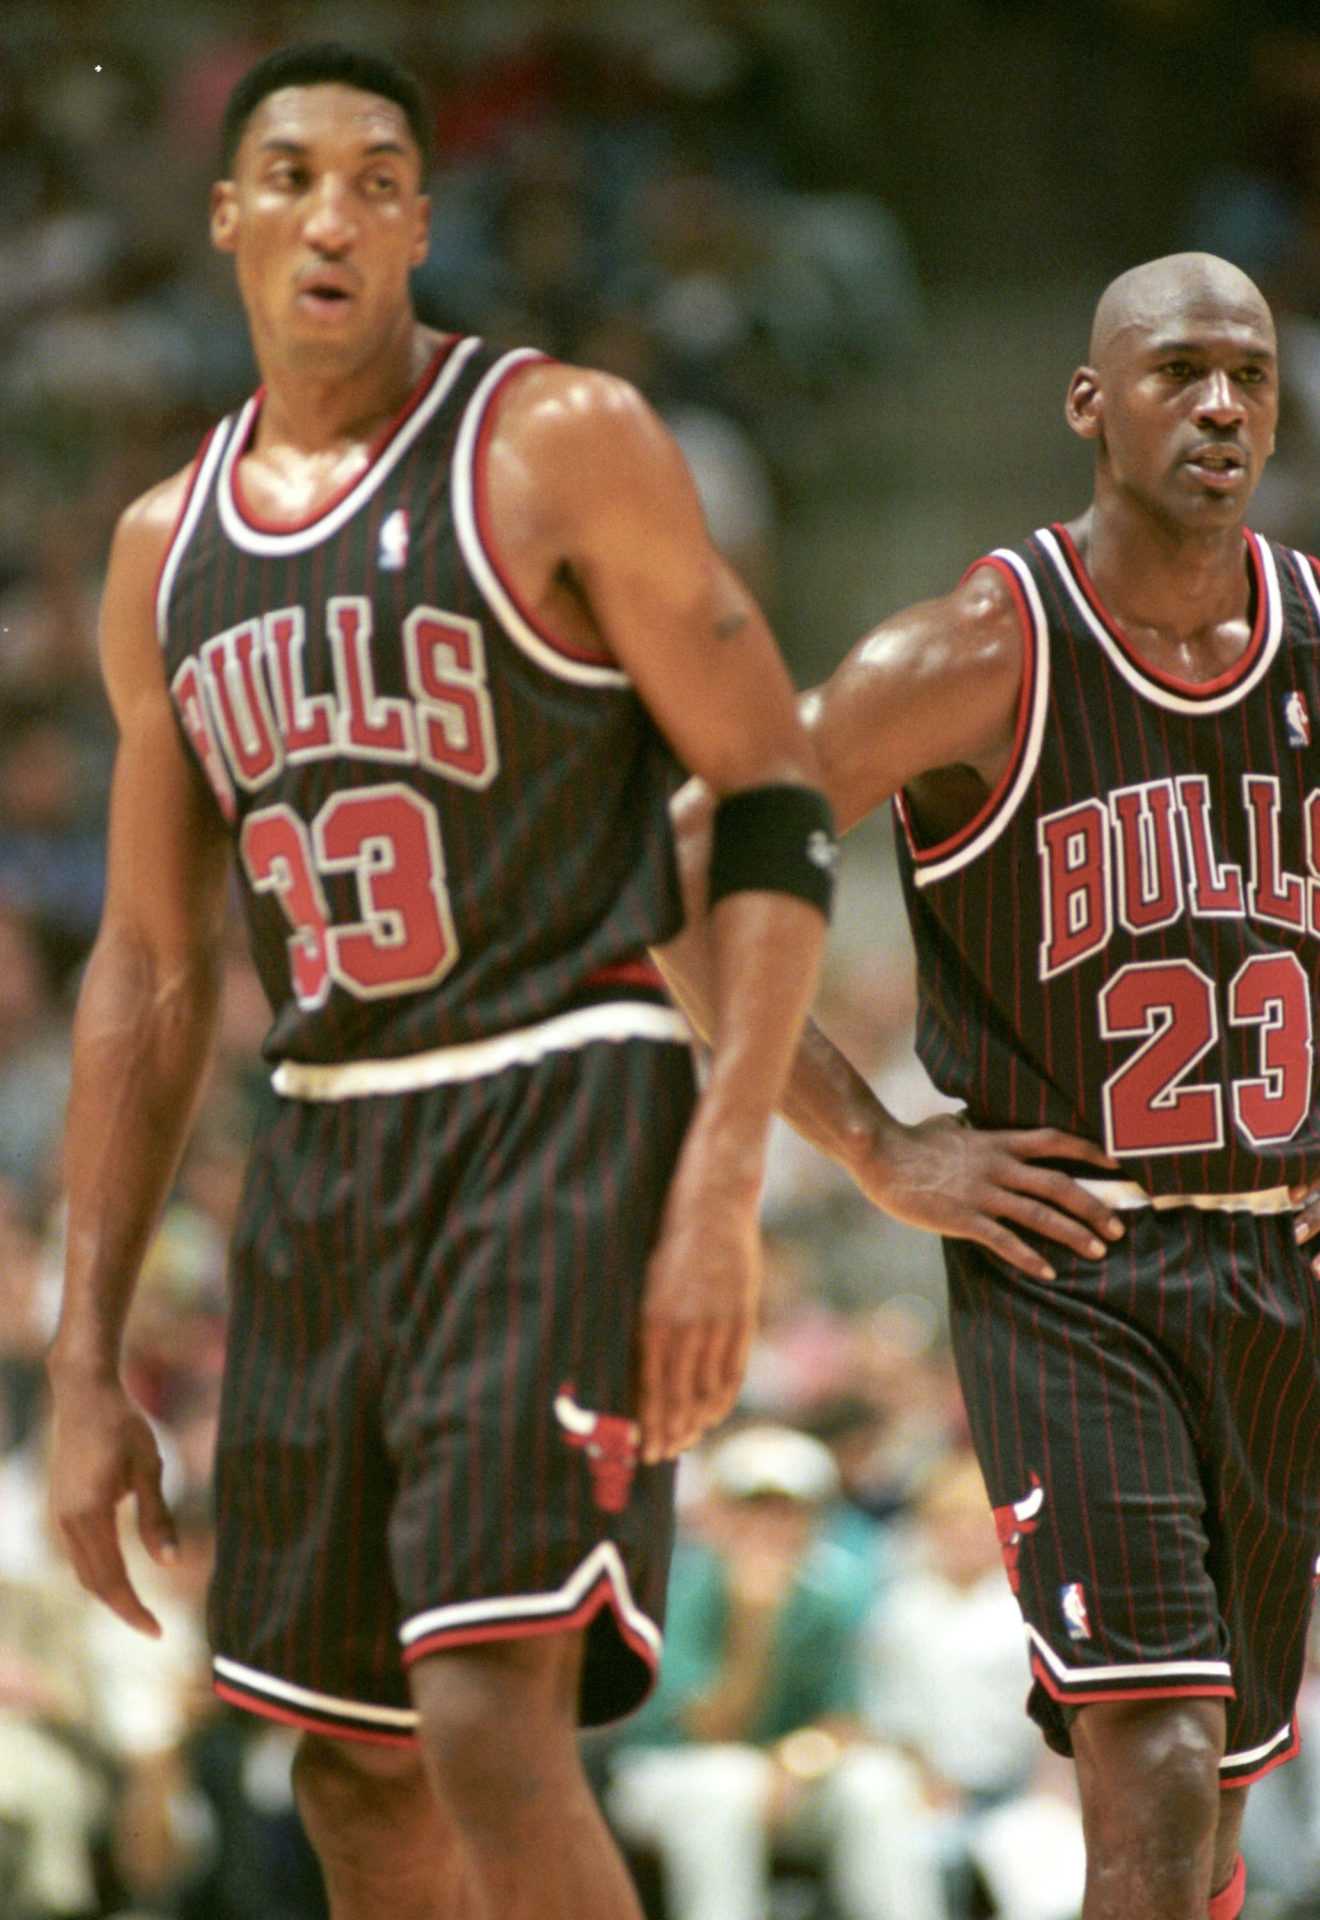 Battre Michael Jordan 101: l'ancien coéquipier des Bulls Scottie Pippen sur la façon dont il le garderait